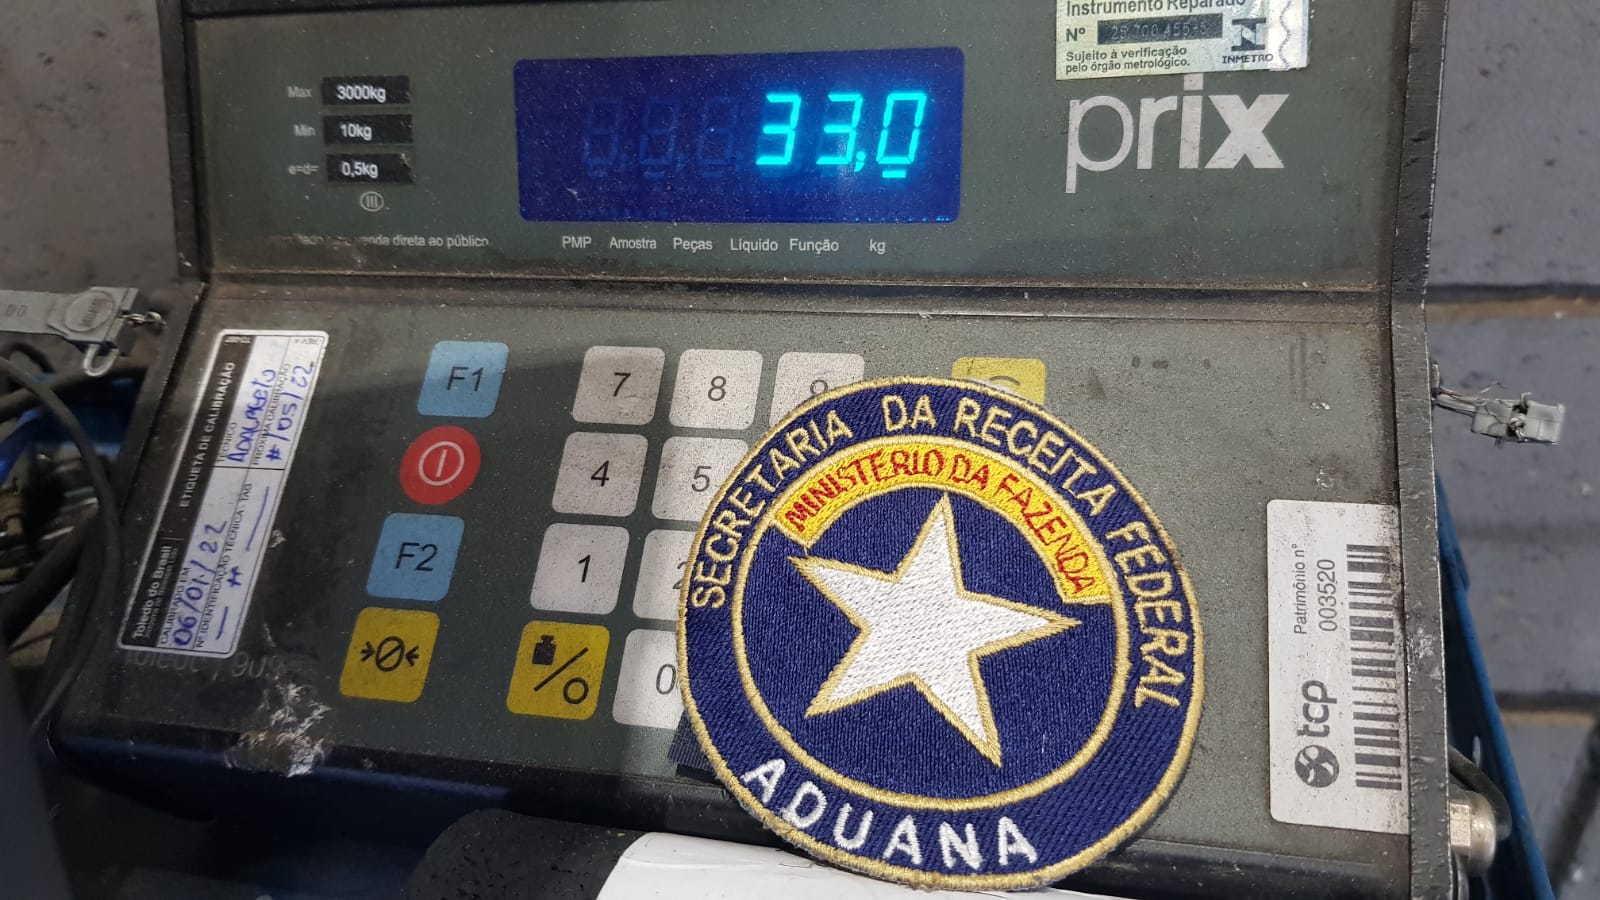 d7026c7f-25a3-4466-9c72-36e115c1a24b Tráfico Internacional: Receita Federal apreende 33 kg de cocaína no Porto de Paranaguá